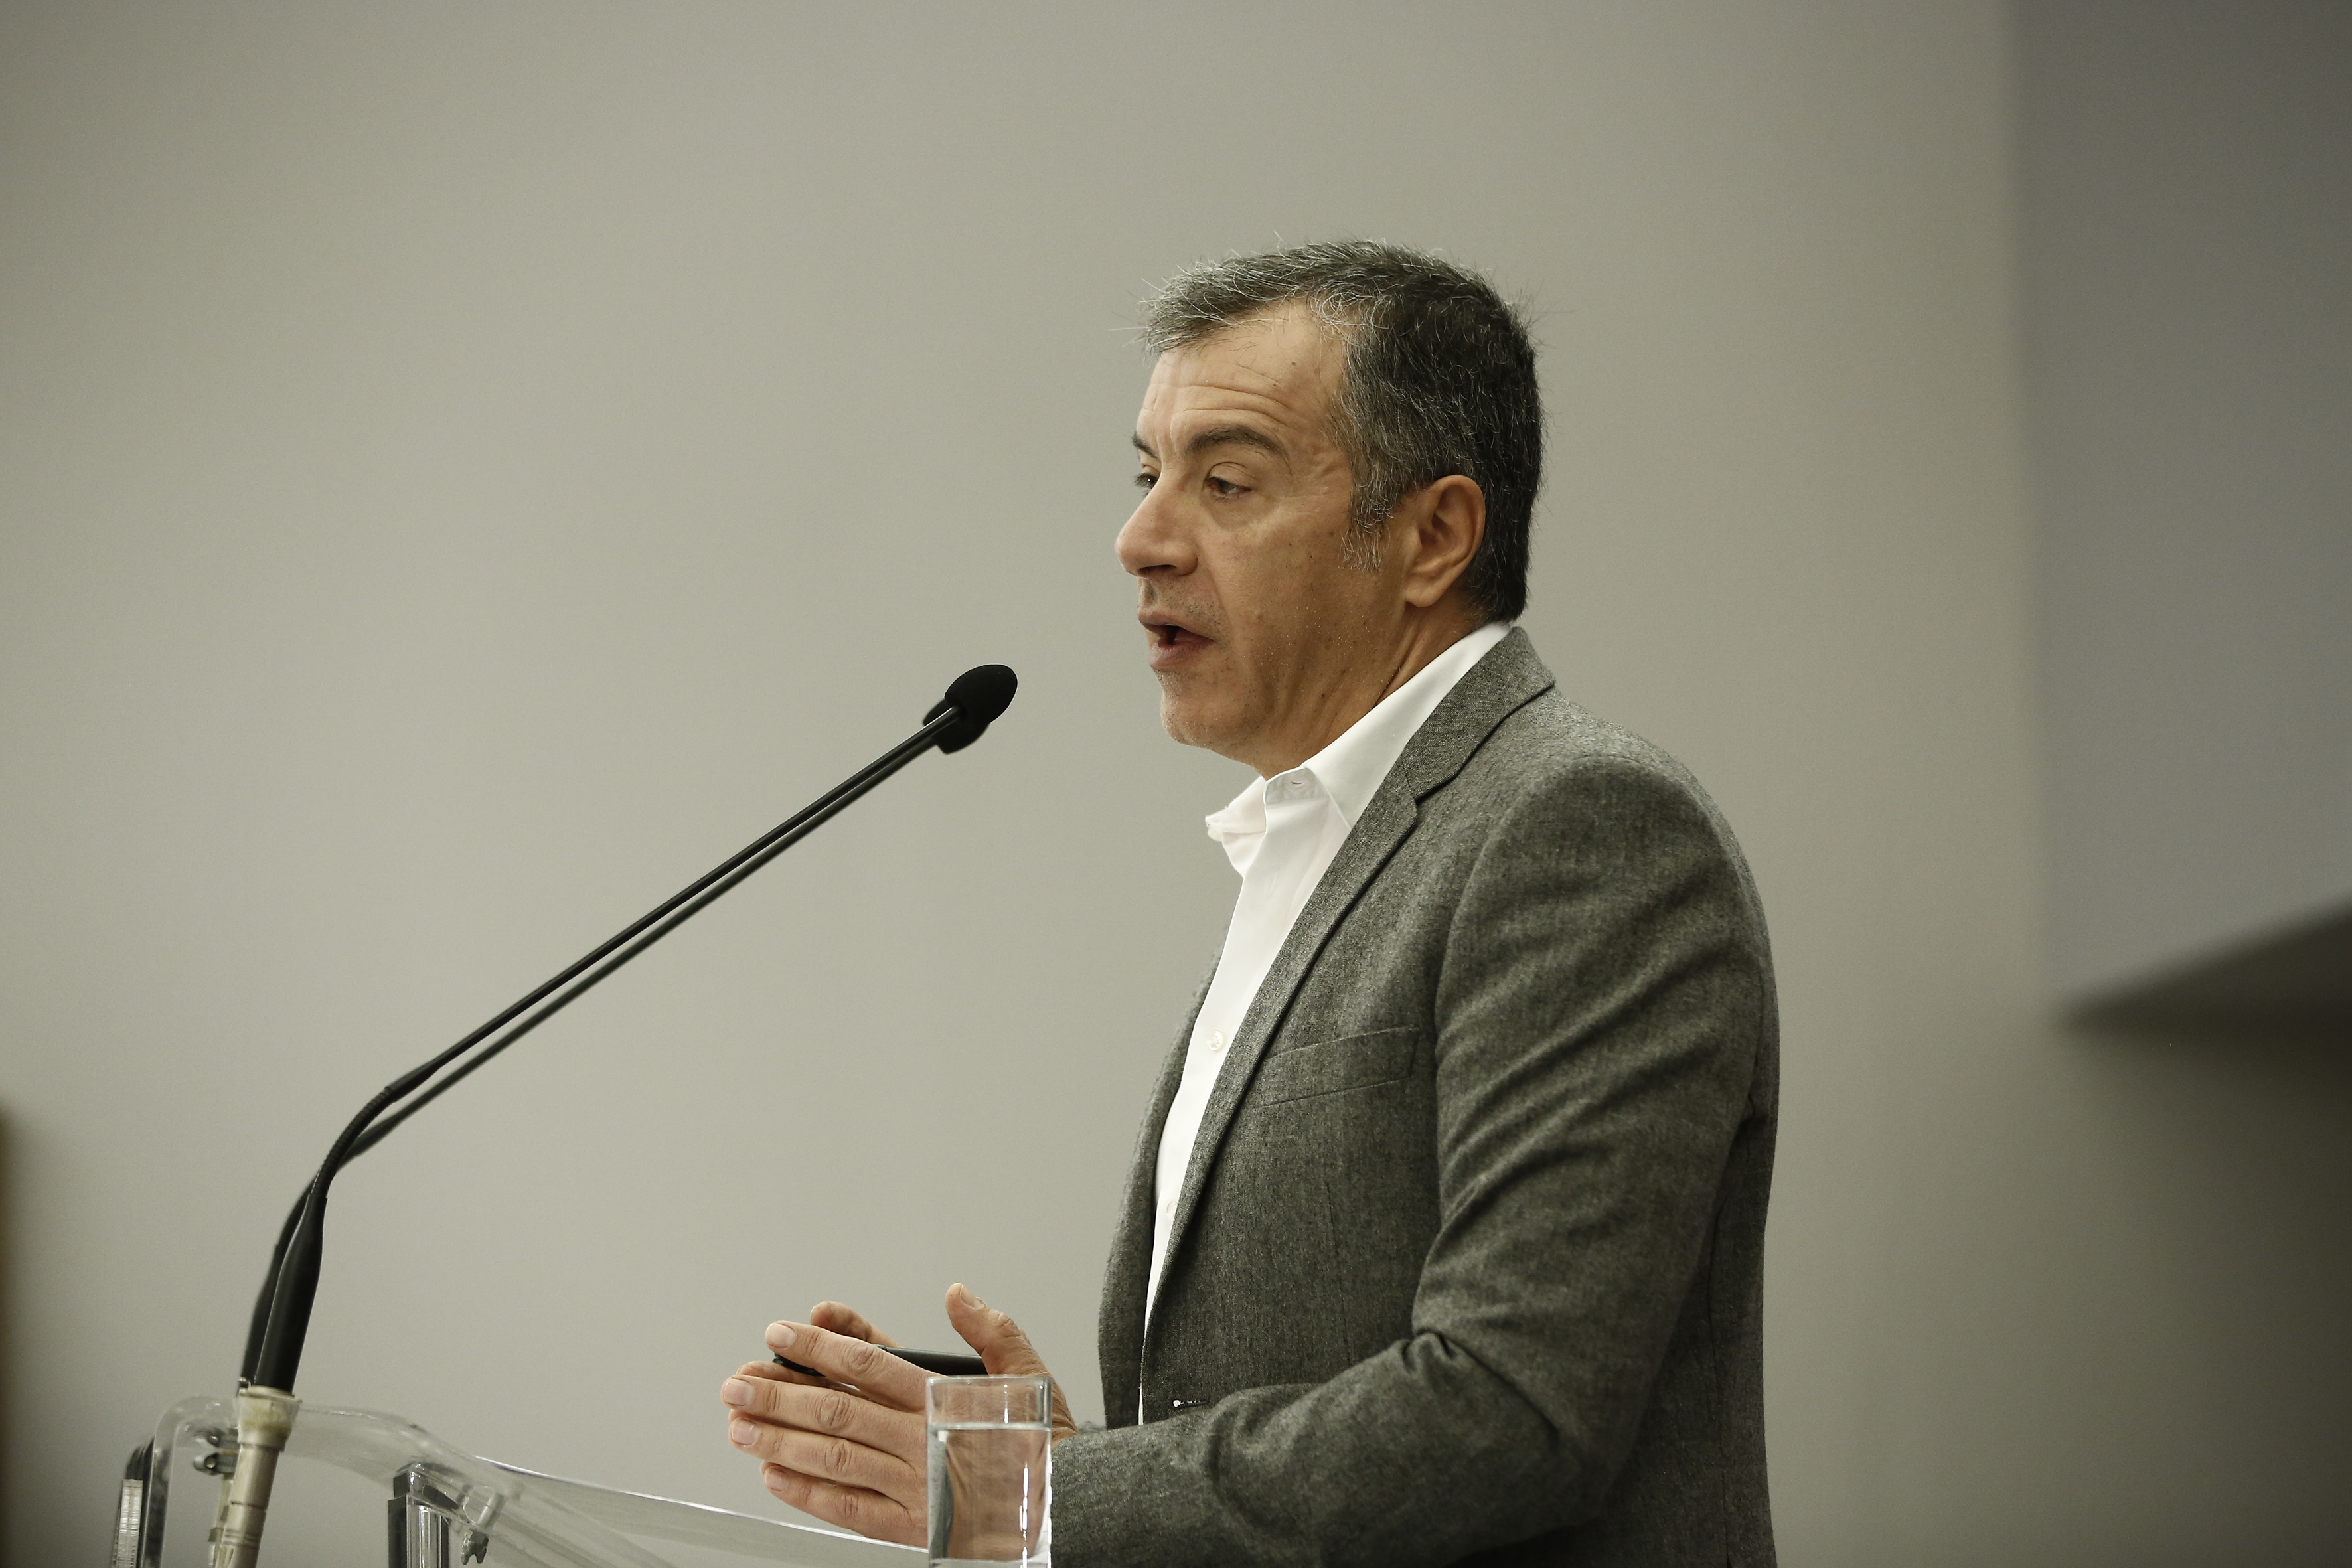 Θεοδωράκης: Να σταματήσει η εμπλοκή υπουργών στο έργο της Δικαιοσύνης